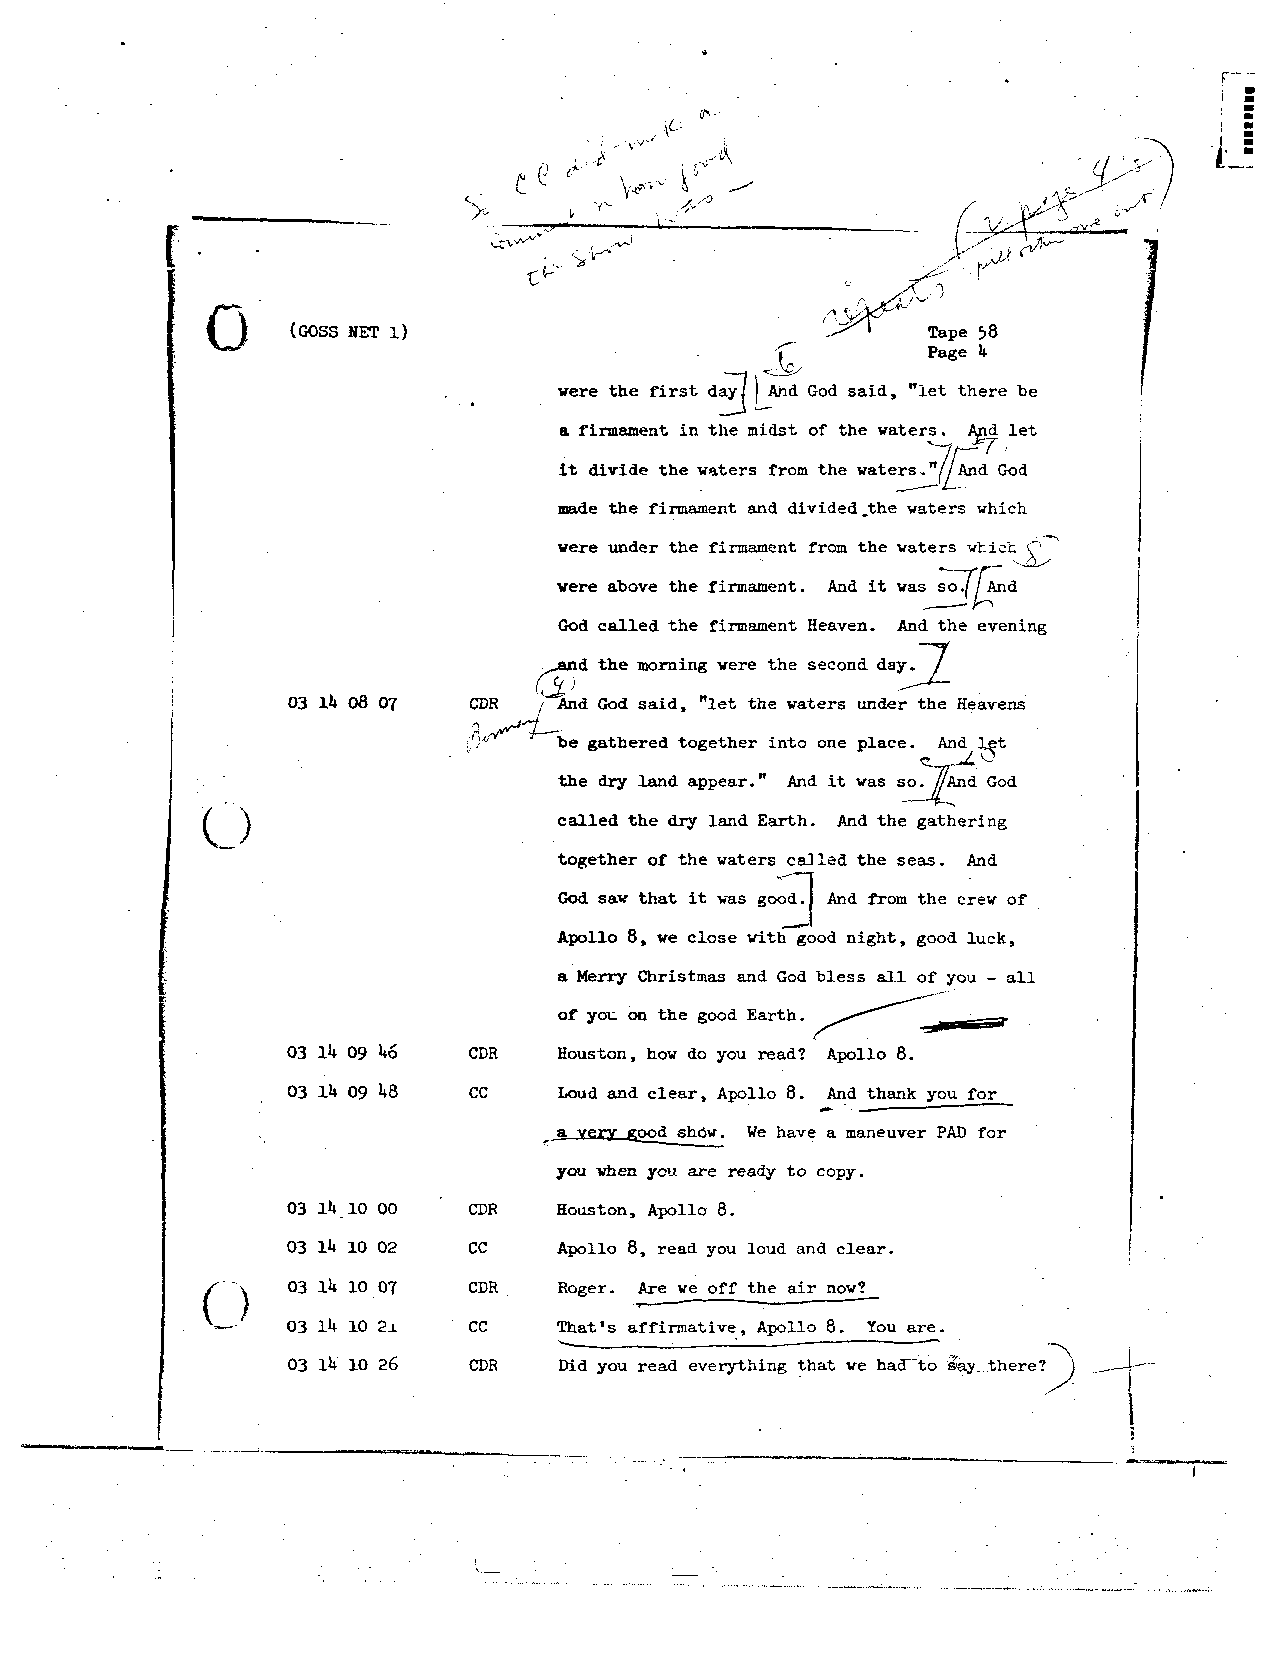 Page 463 of Apollo 8’s original transcript